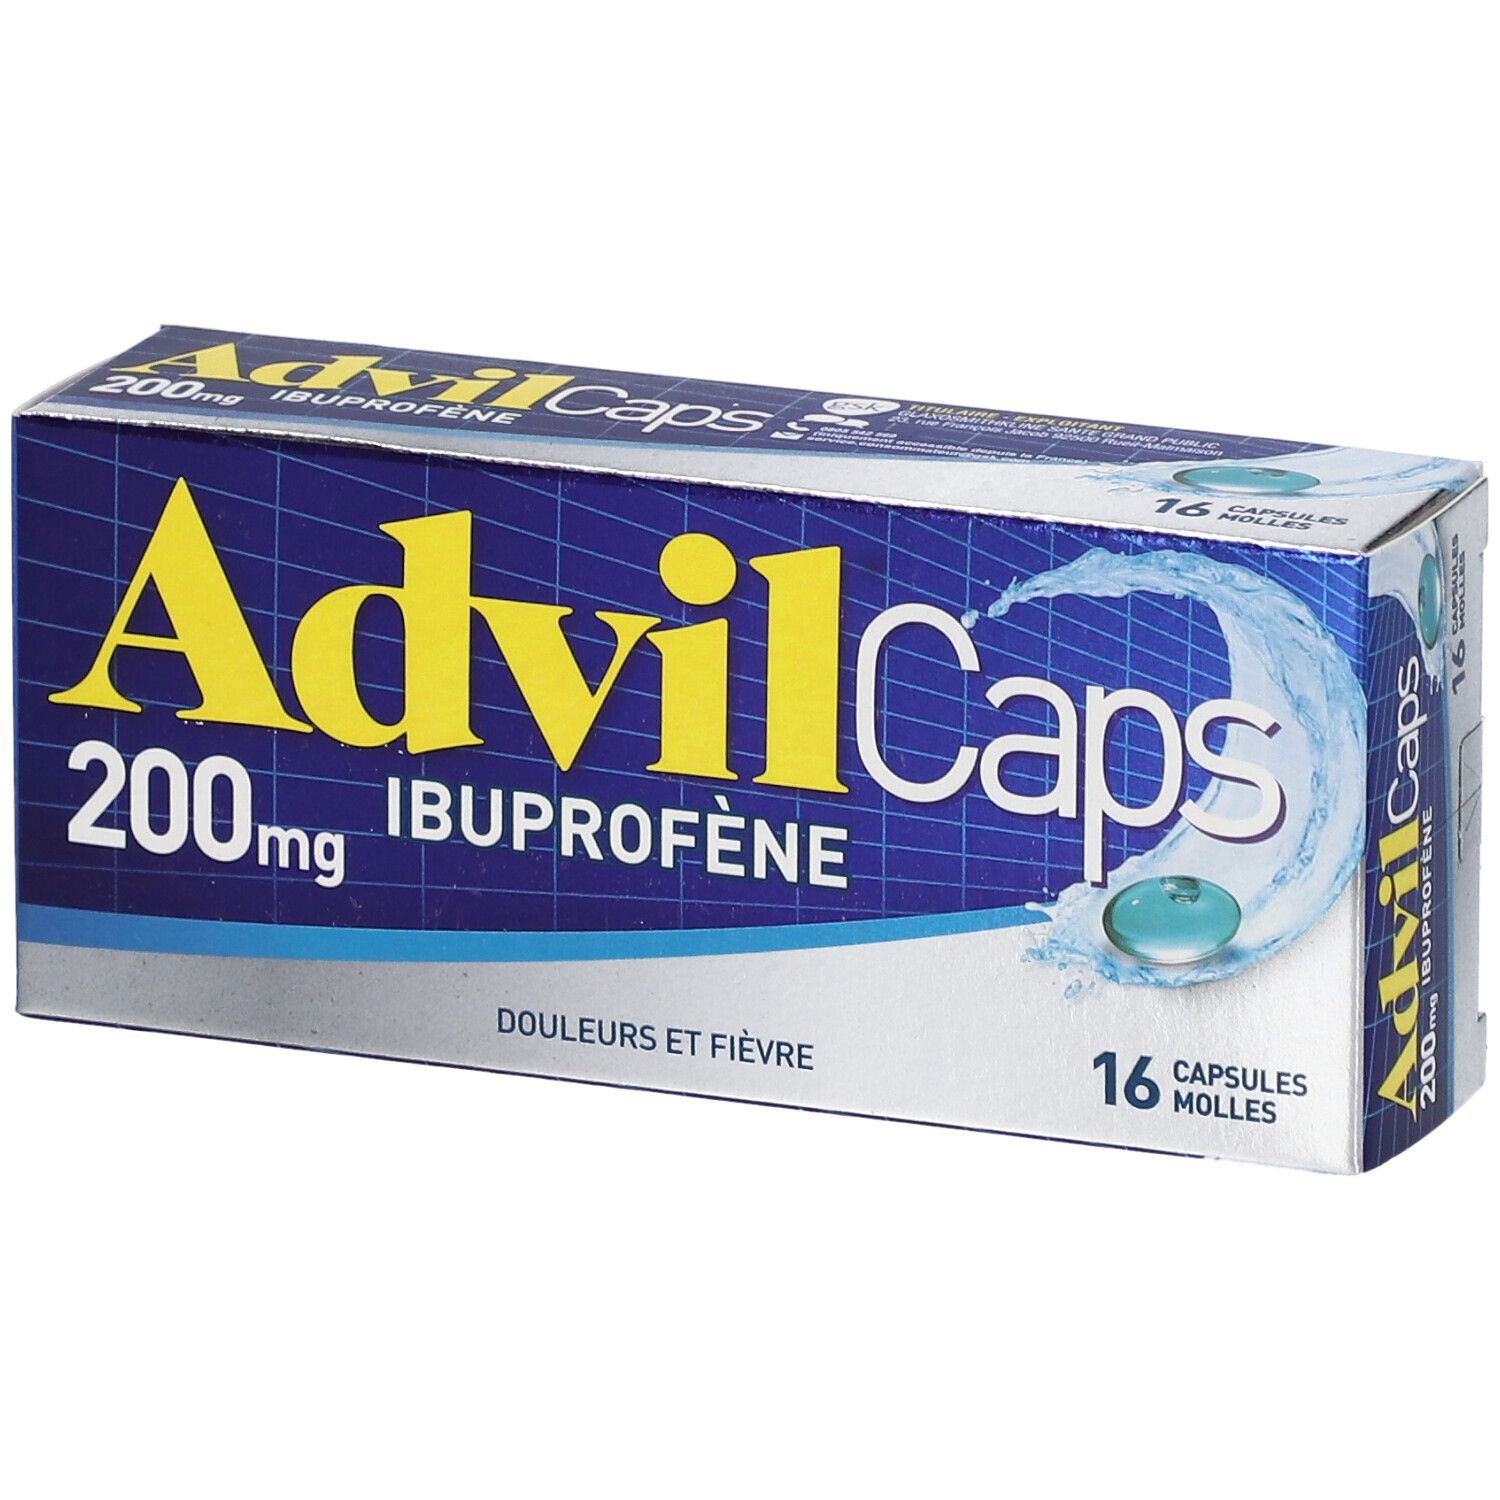 AdvilCaps 200 mg